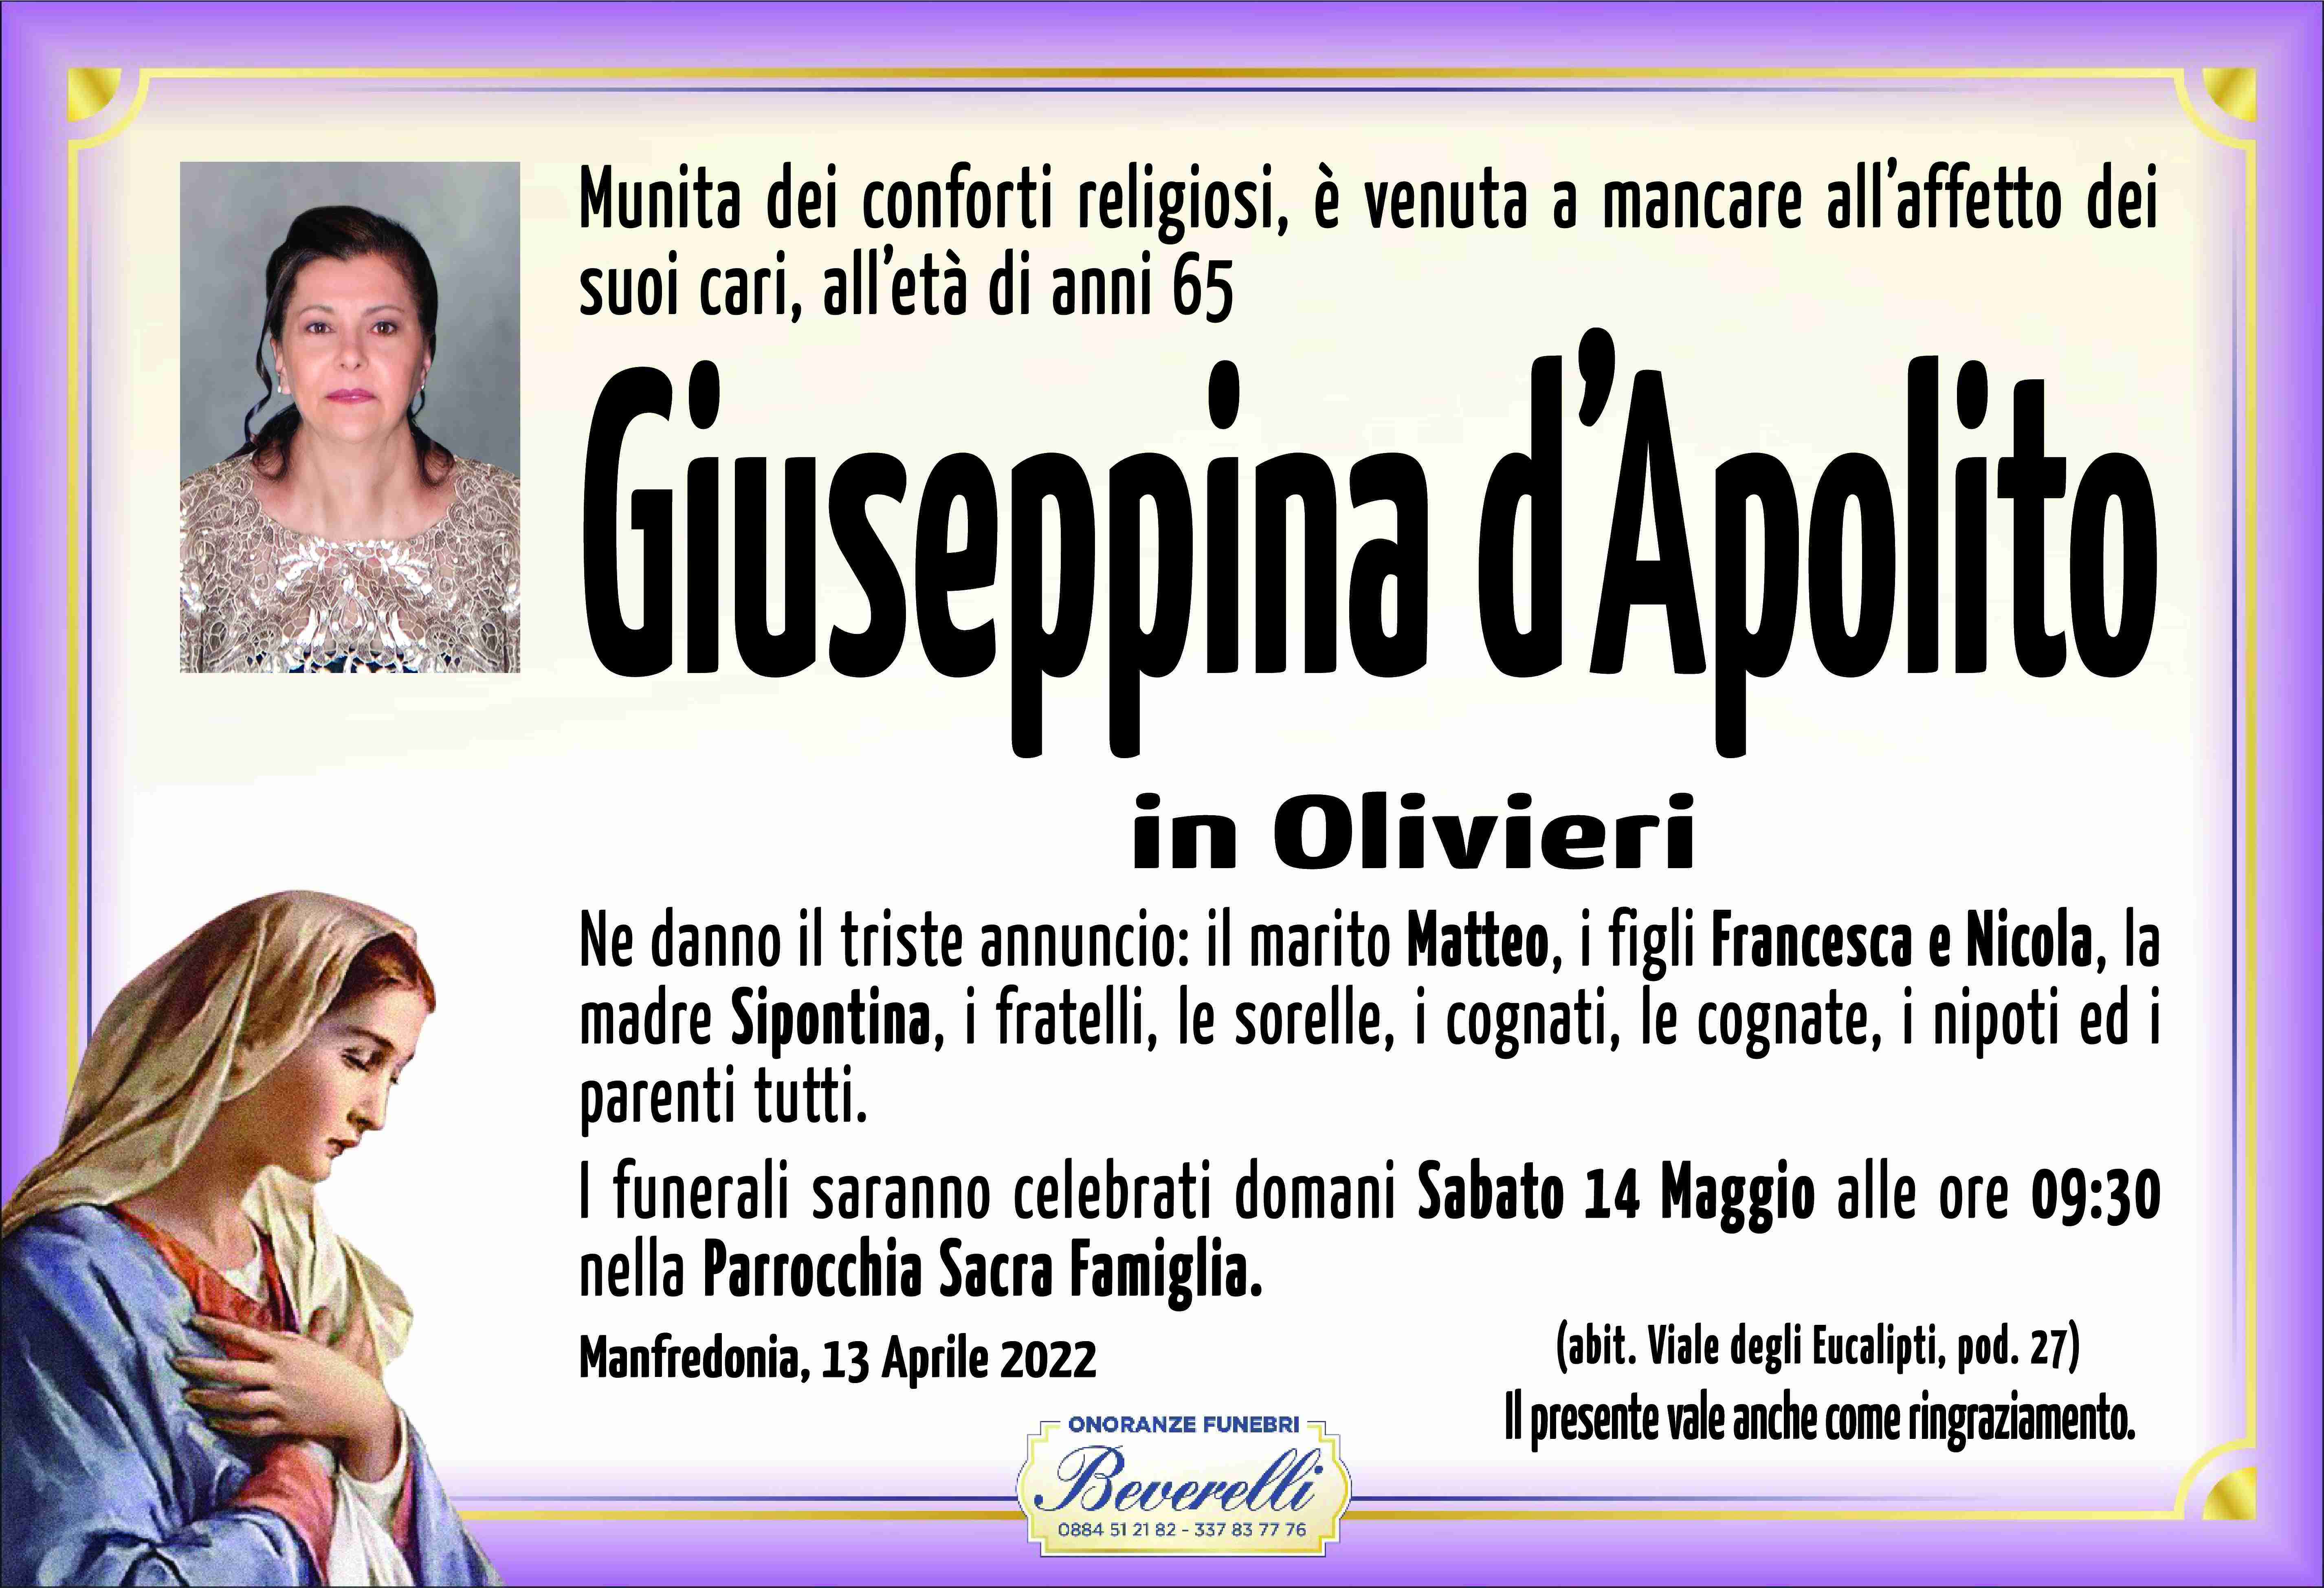 Giuseppina D'Apolito